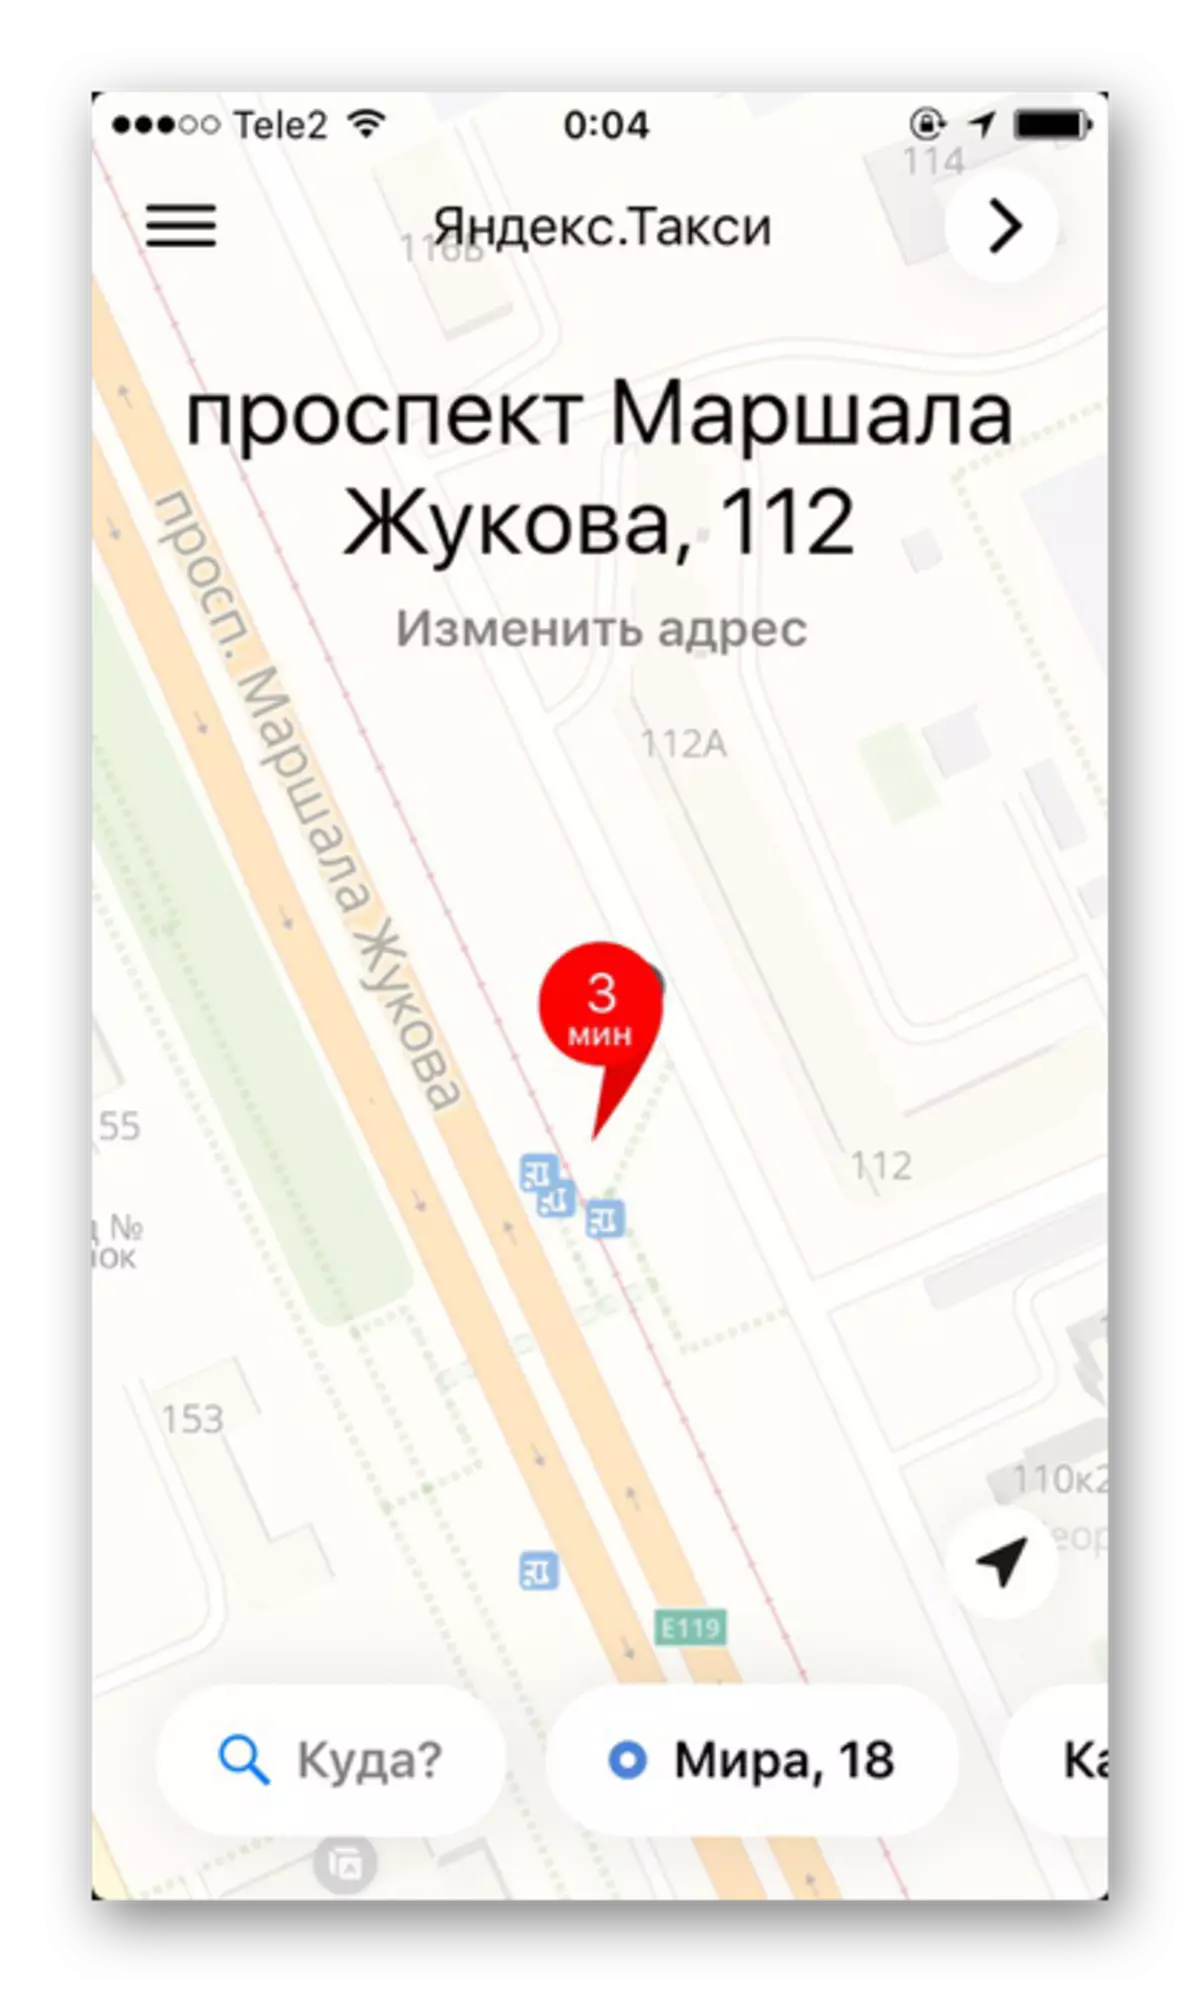 Яндекс.Таксида 4 урам һәм йортларның җентекле билгесе булган мәйдан картасы